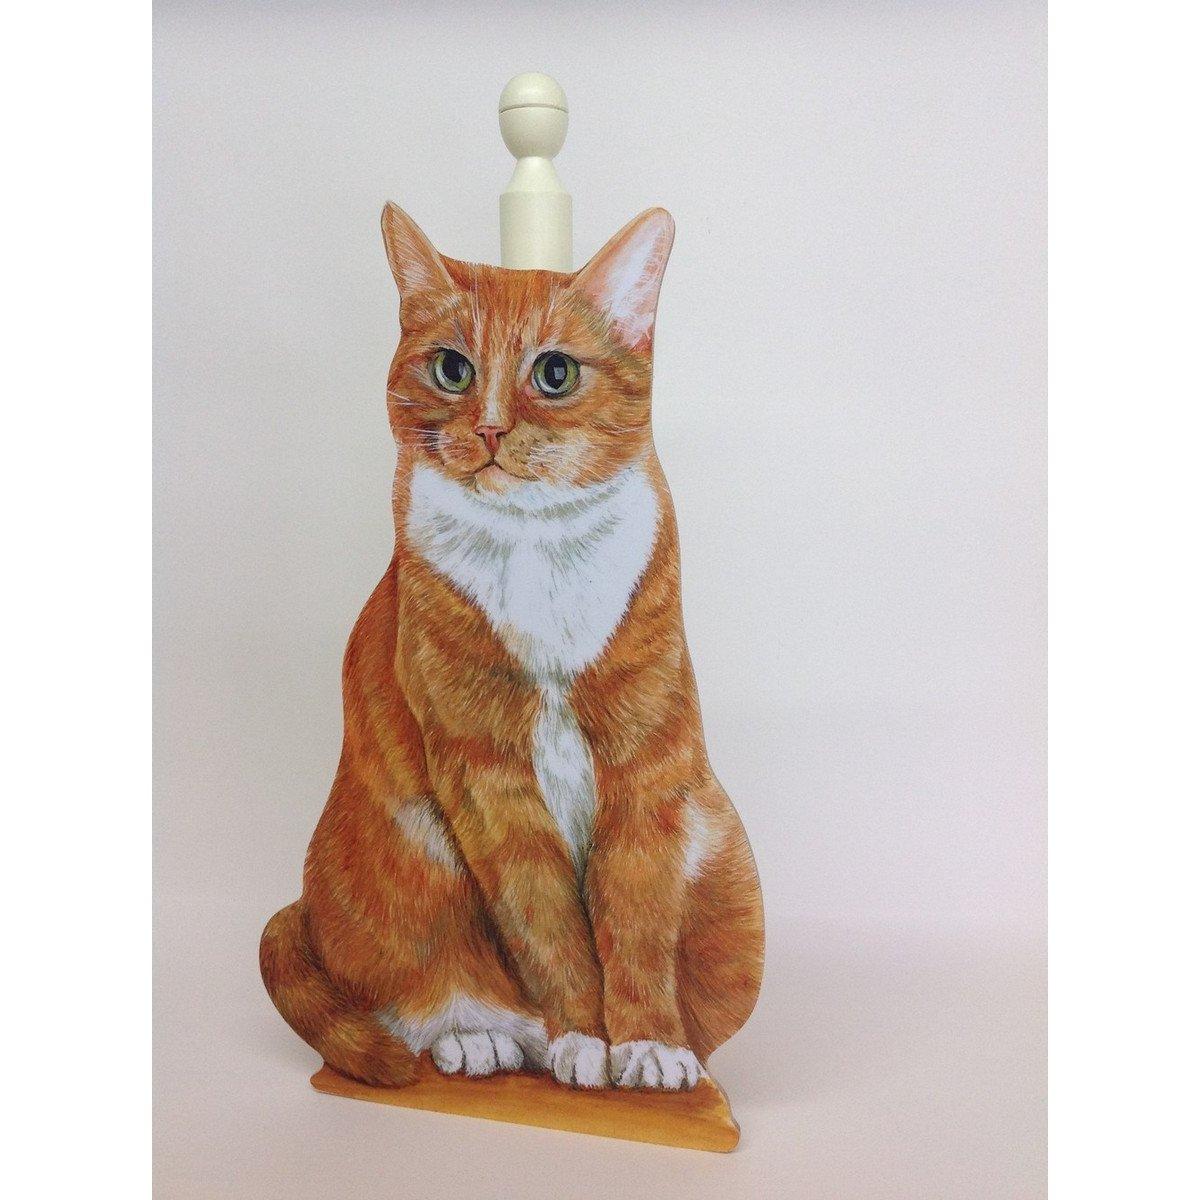 Ginger cat roll holder